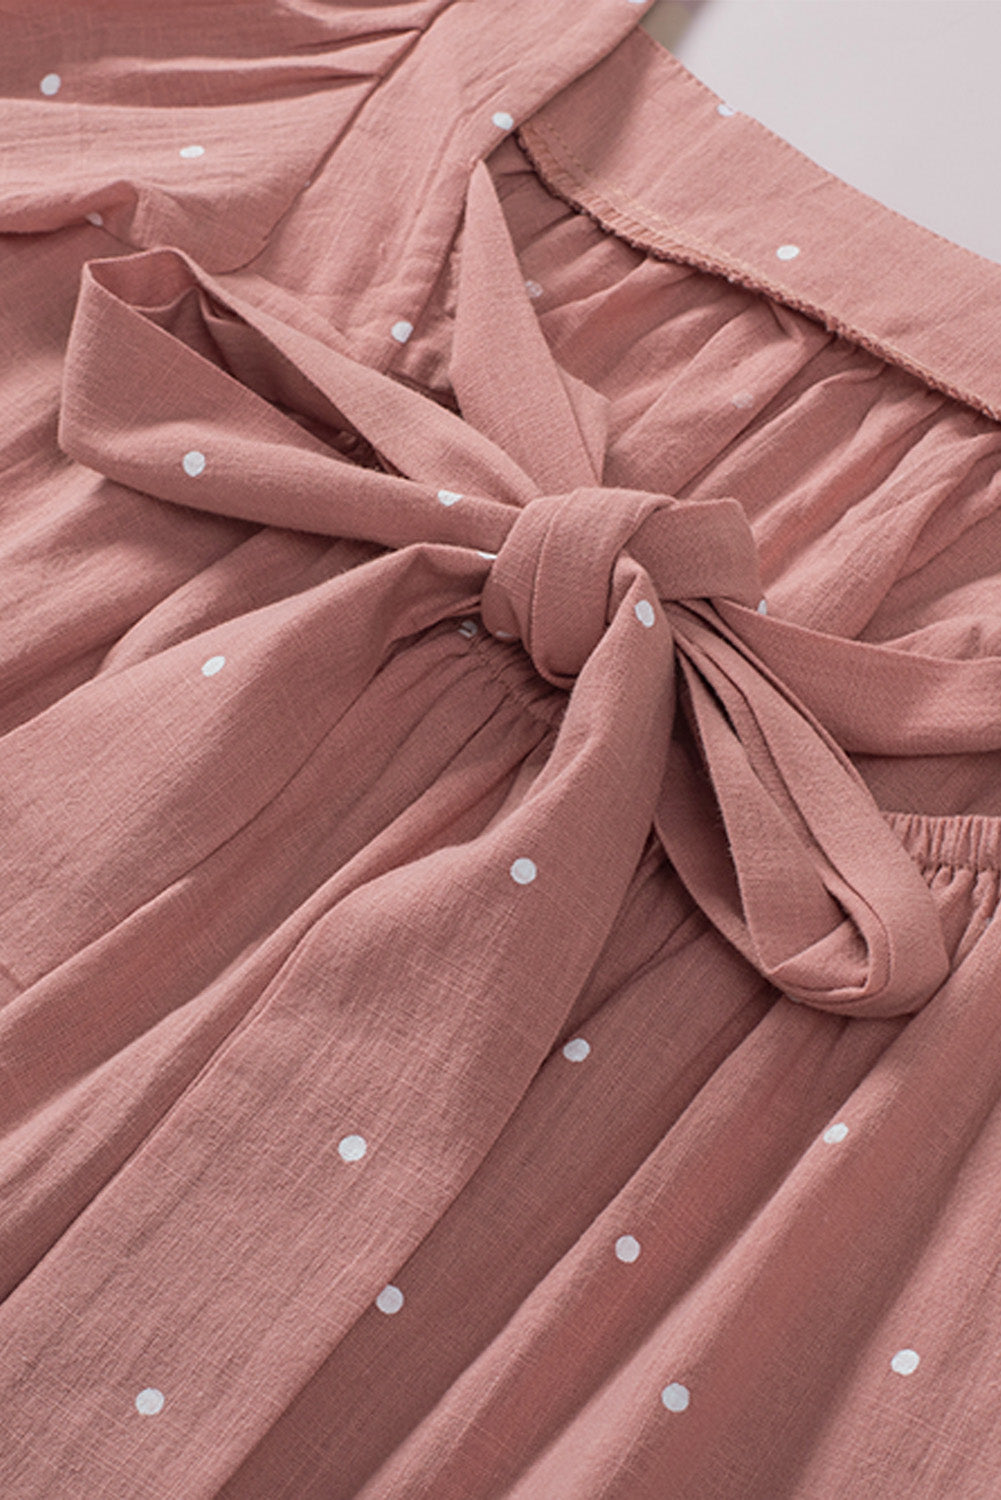 Rosafarbene Bluse mit eckigem Ausschnitt, gepunktetem Print, Puffärmeln und Raffung hinten